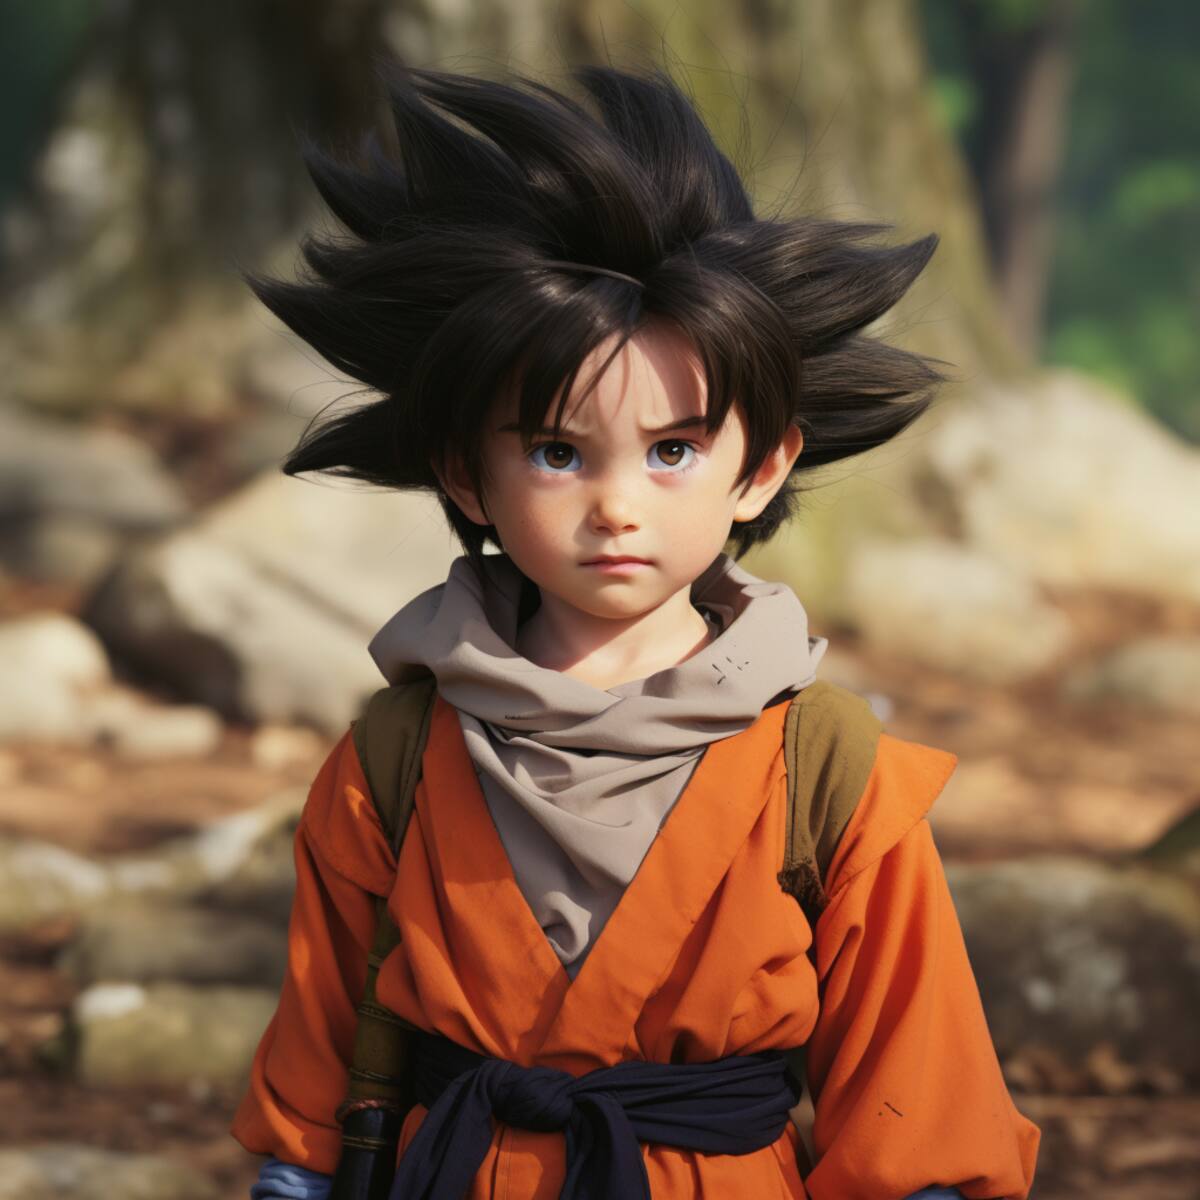 A pesar de su corta edad, Goten comparte un vínculo especial con su difunto padre, Goku. Su deseo de emular a Goku en la lucha y la formación de su propia identidad como guerrero saiyajin son aspectos que lo conectan con el legado de su padre, creando una dinámica única en la trama de Dragon Ball Z.